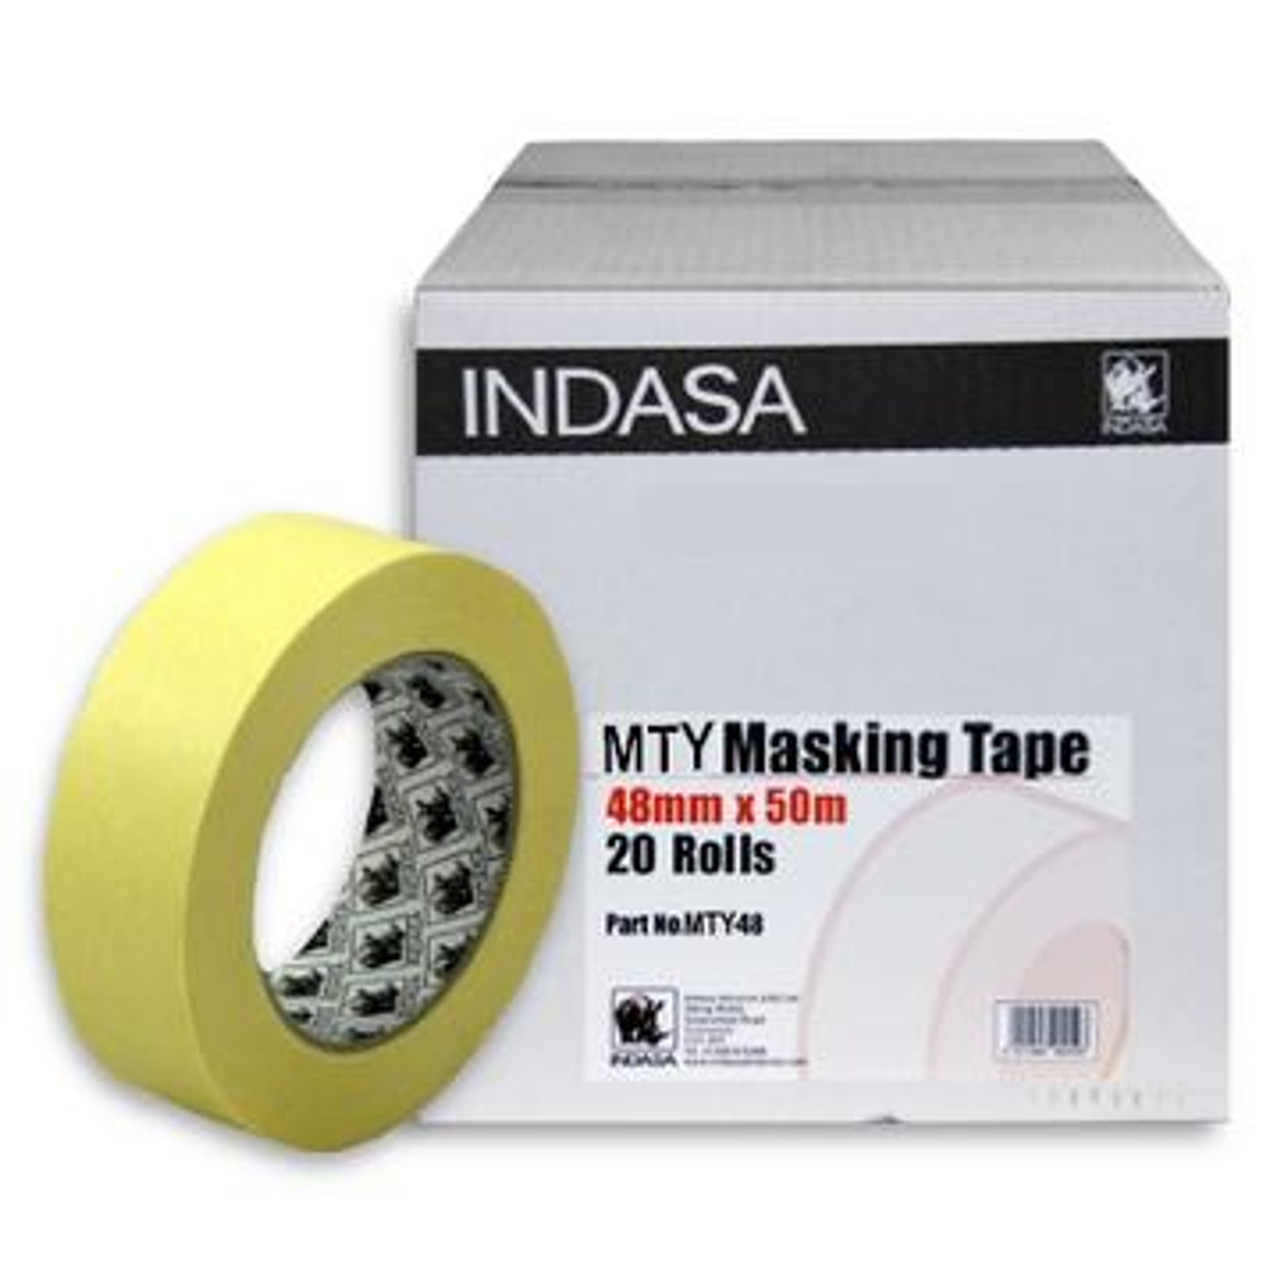 Indasa 563199 MTY Masking Tape 2 x 50m 20/Case